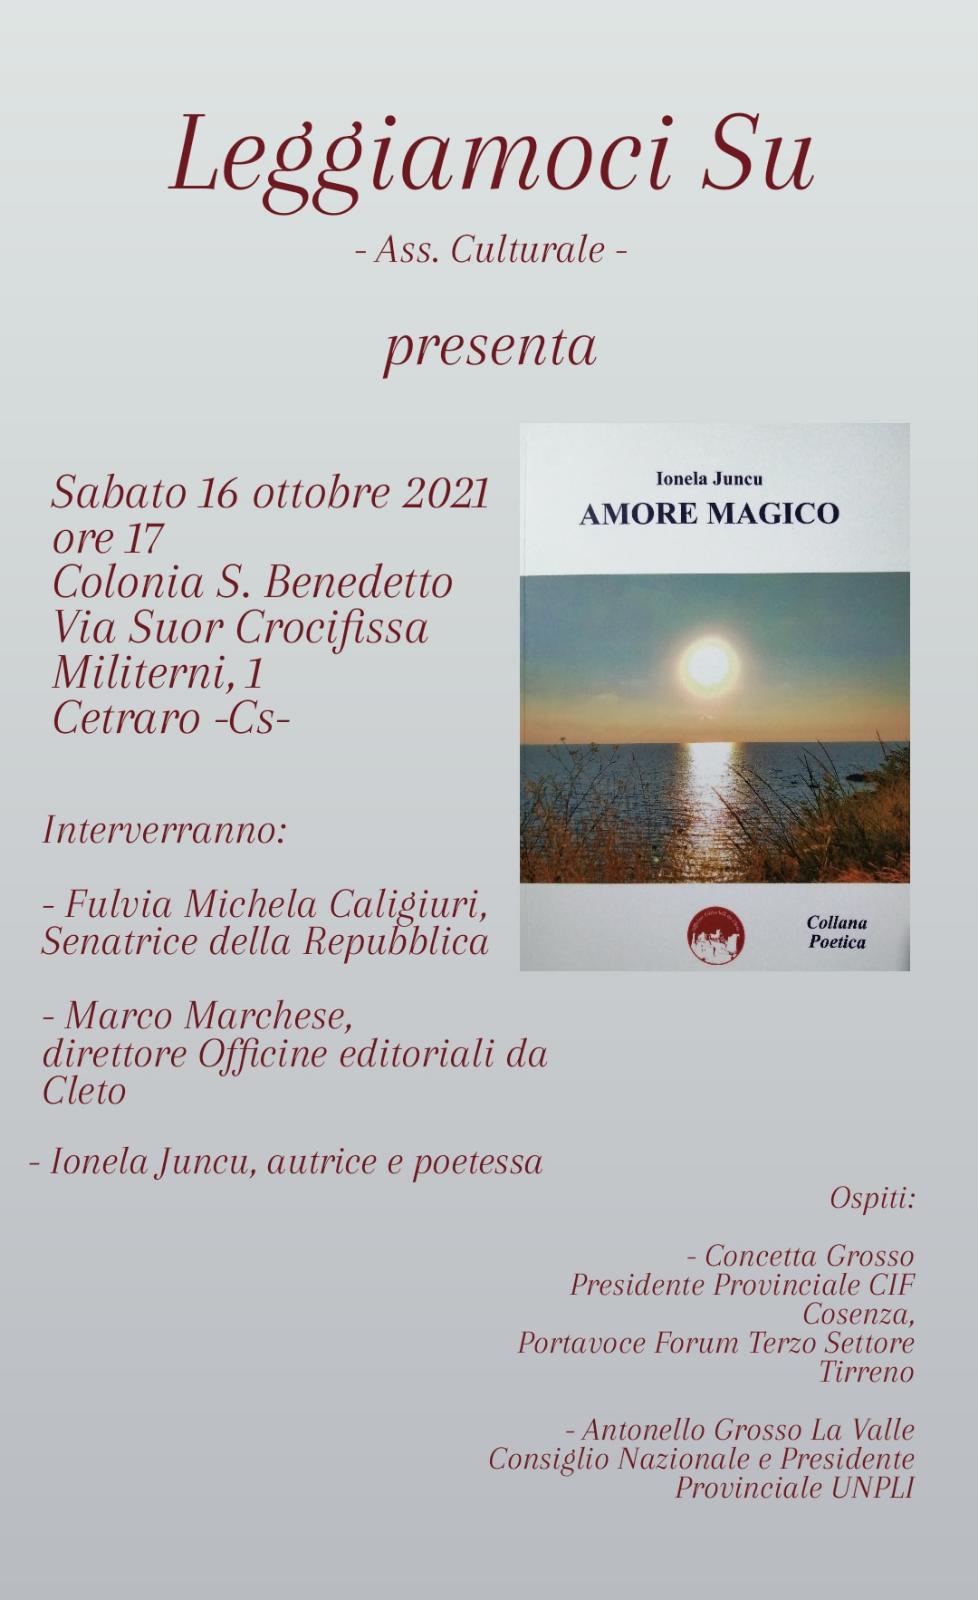 La locandina della presentazione del libro AMORE MAGICO di Ionela Juncu